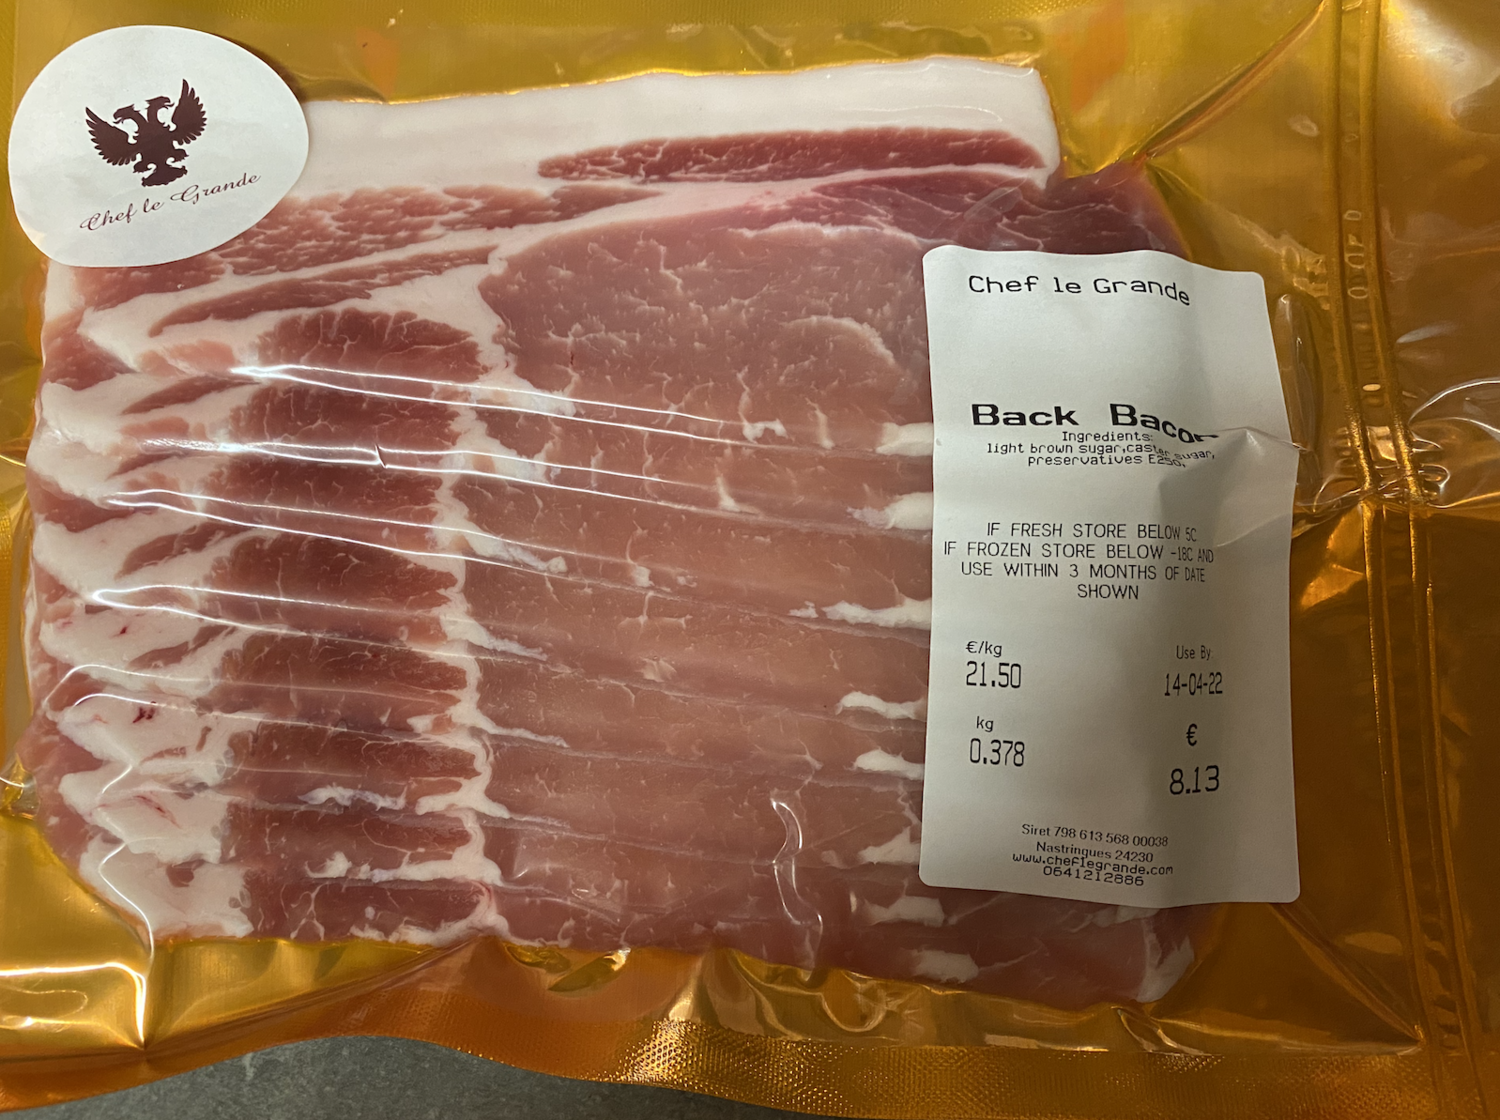 Dry Cured Back Bacon - Av. 8.00€  per 350gm, 8 pack               
(21.50€ per KG)